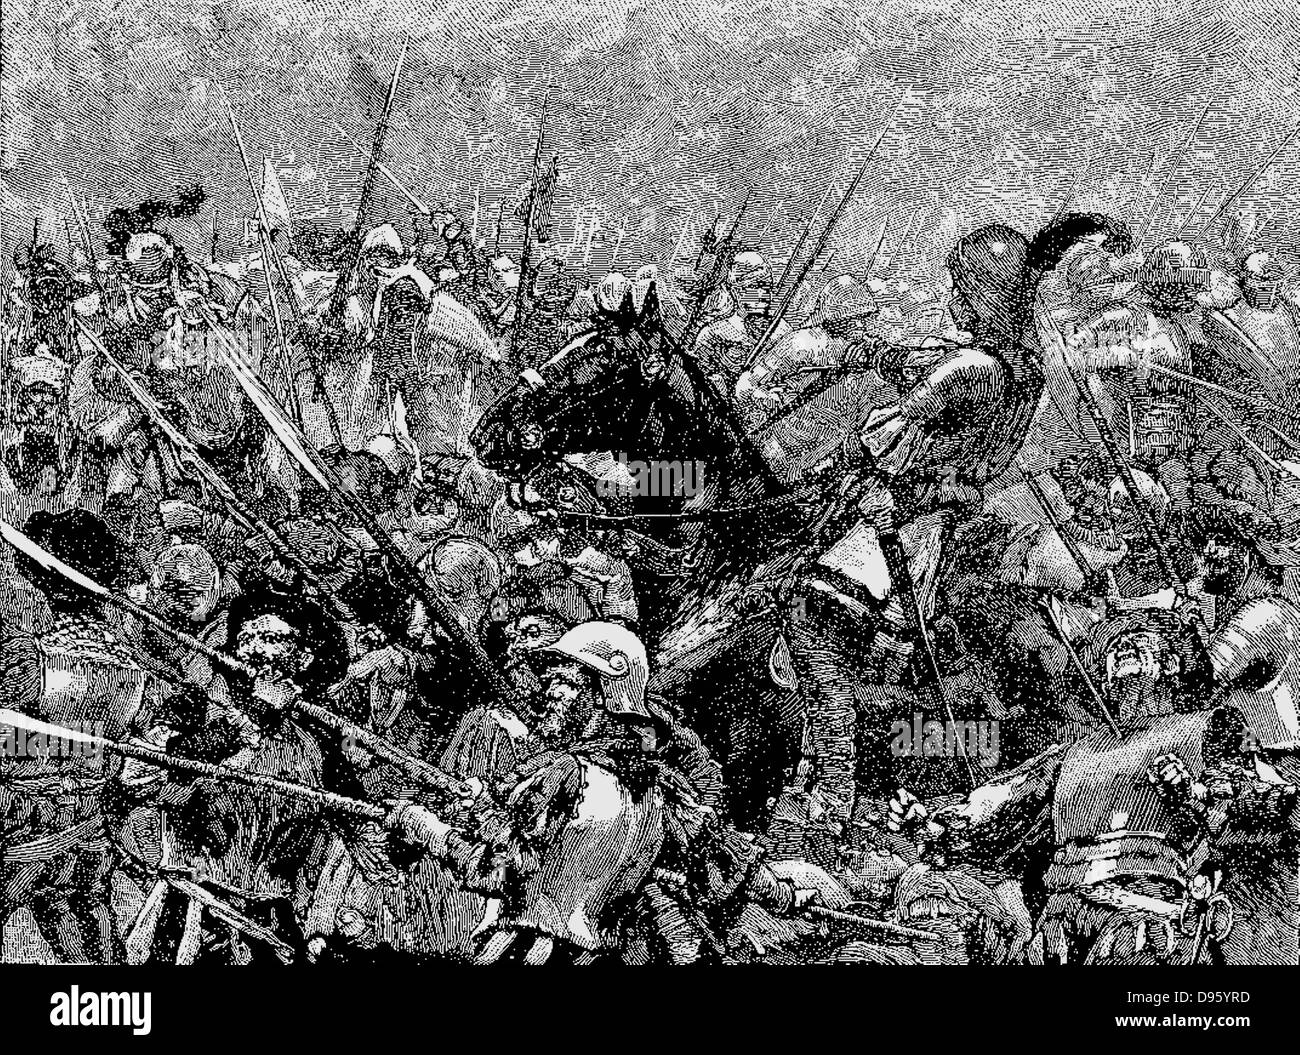 Schlacht von Stoke, 16. Juni 1487. Deutsche Söldner unter Martin Schwarz ihre letzten gegen die stärker und disziplinierter Kräfte des Königs. Englische Langbögen mit Stahl - gespitzte Pfeile outshot Armbrüste der Deutschen, die weit länger zu laden. Gravur c 1885. Stockfoto